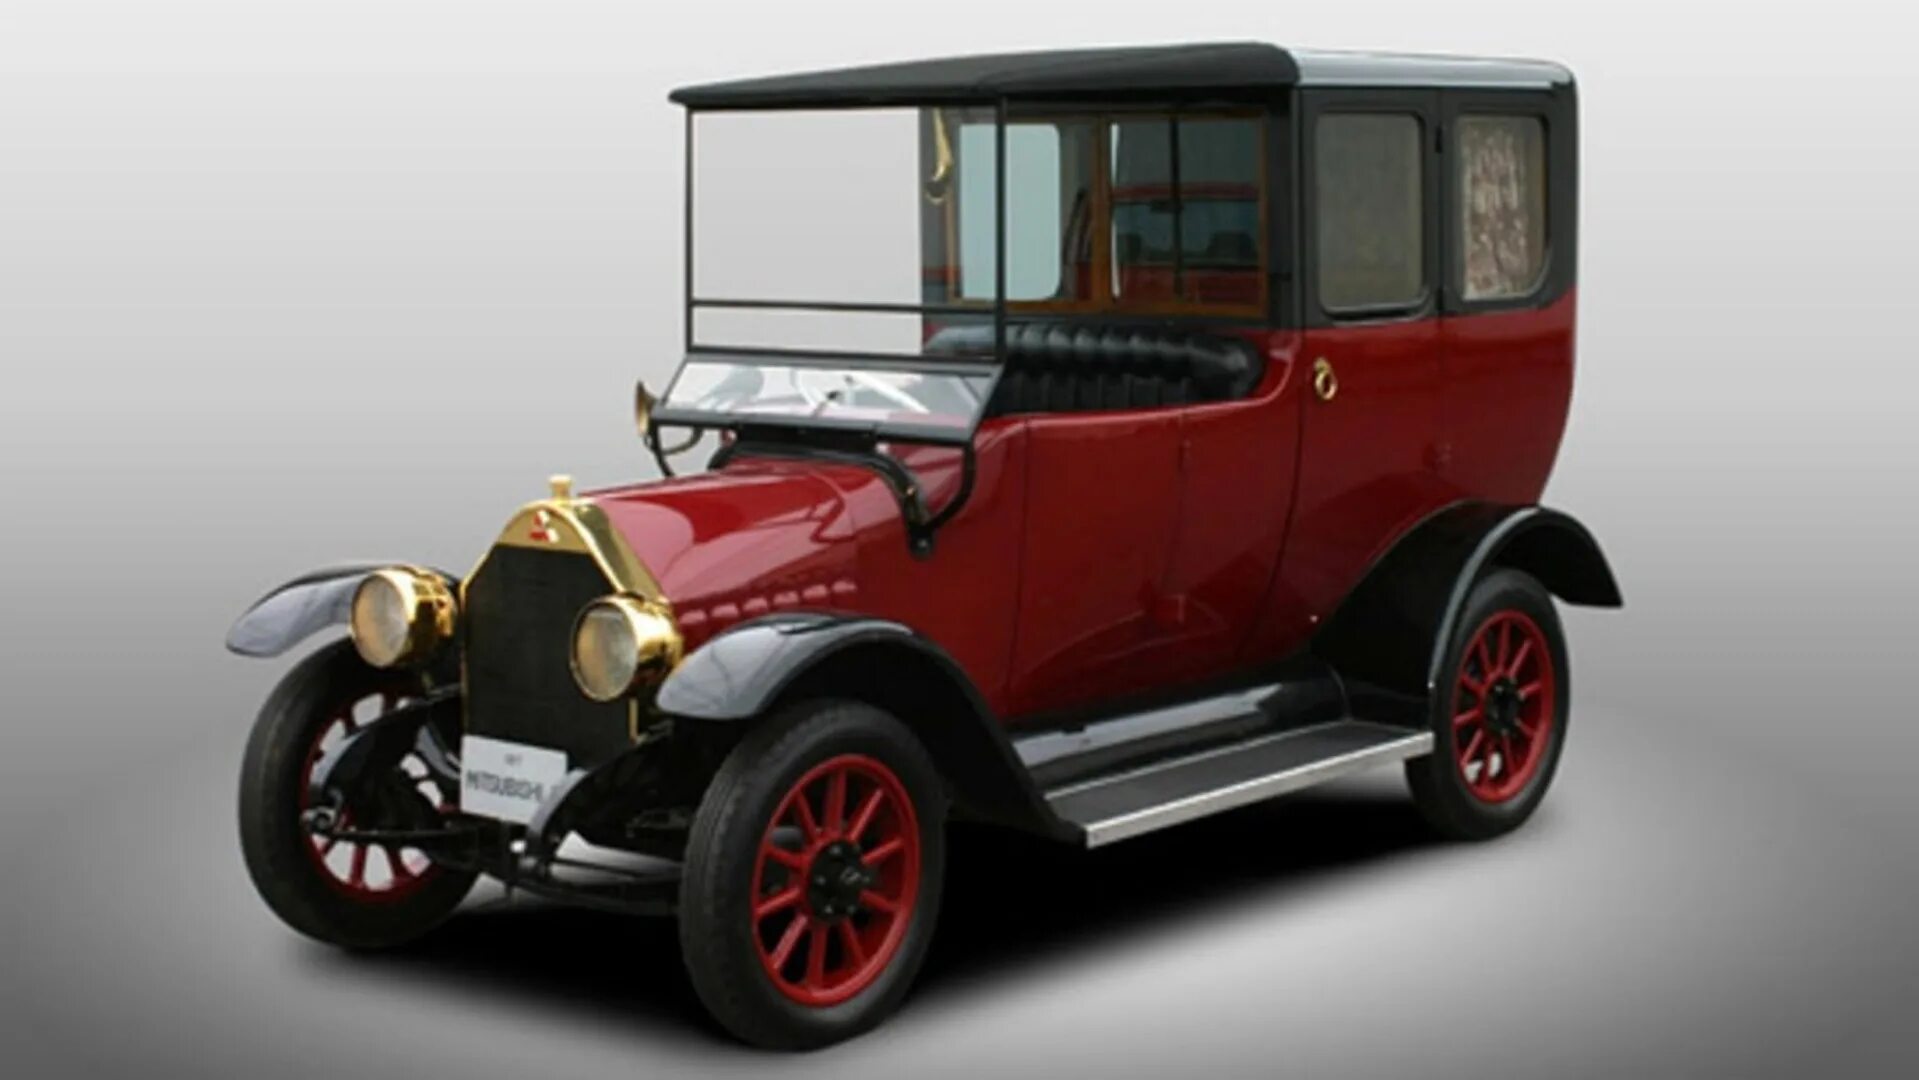 Первая мицубиси. Mitsubishi model a 1917. Автомобиль Mitsubishi model a 1917. Первый автомобиль Mitsubishi model a 1917 года.. Mitsubishi 1870.